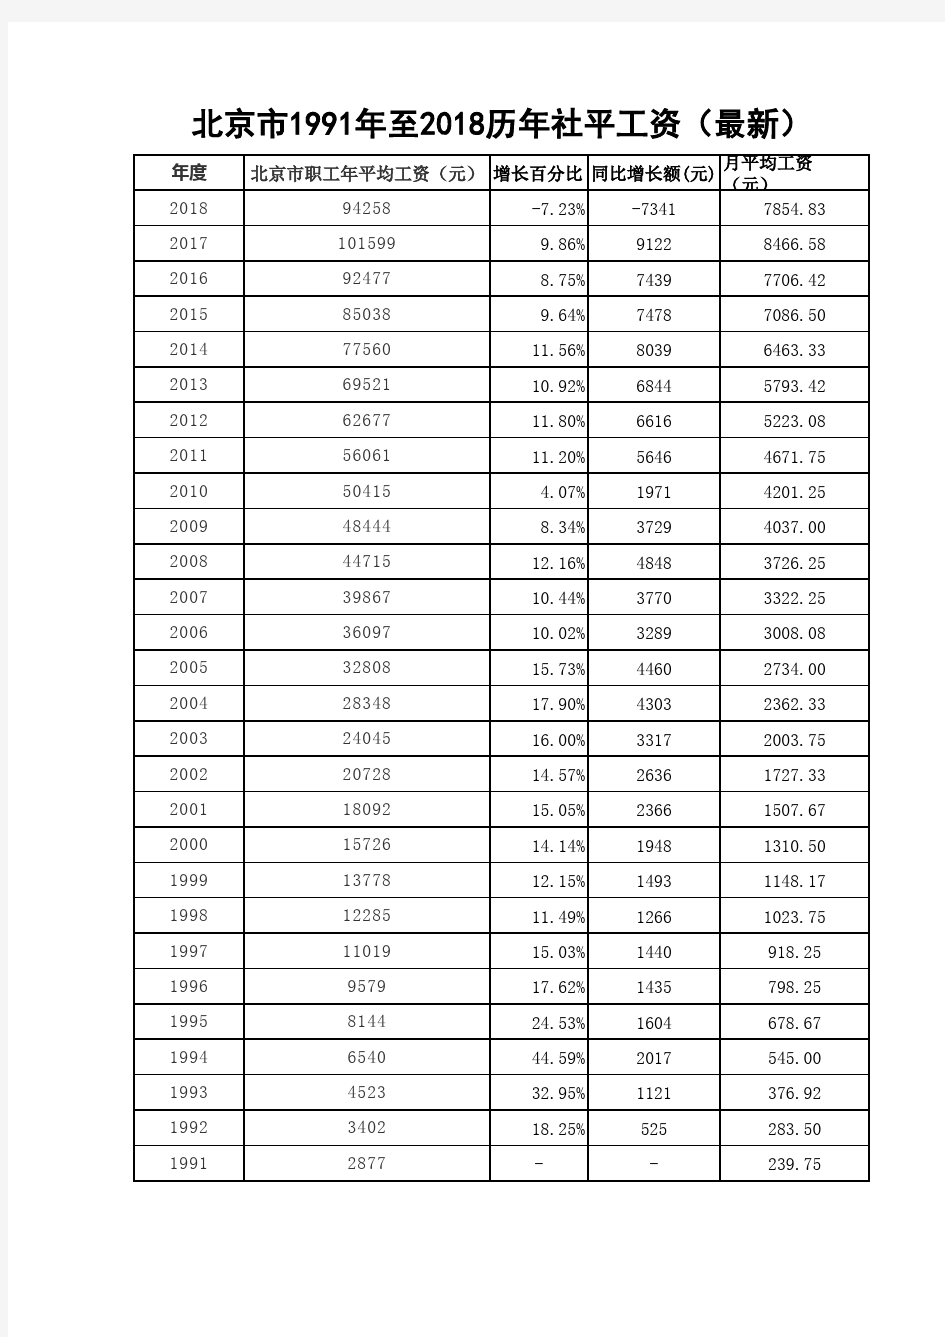 北京市1991年至2018历年社平工资